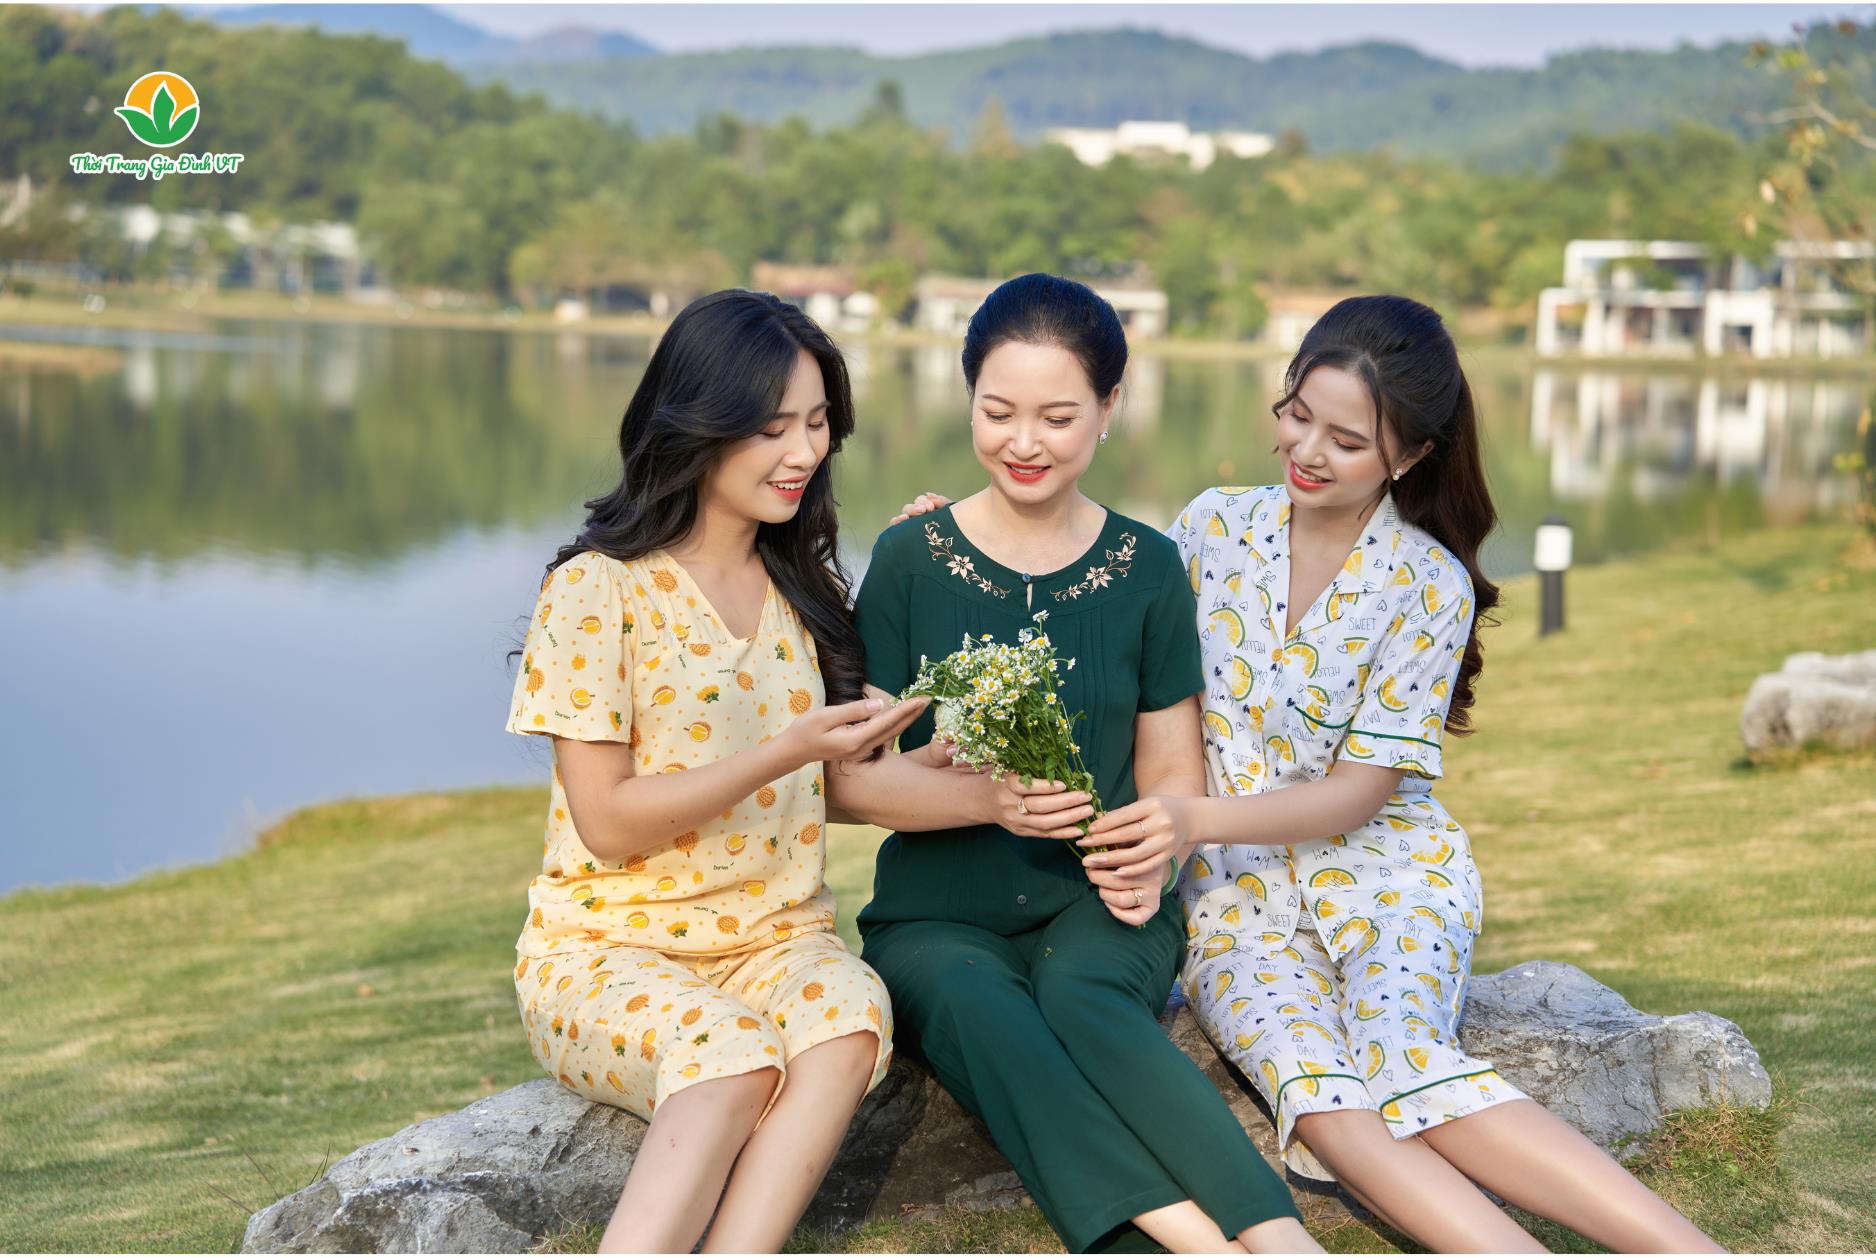 Mừng ngày 8/3 thời trang Việt Thắng tặng giá dùng thử hấp dẫn cho cả gia đình - Ảnh 4.